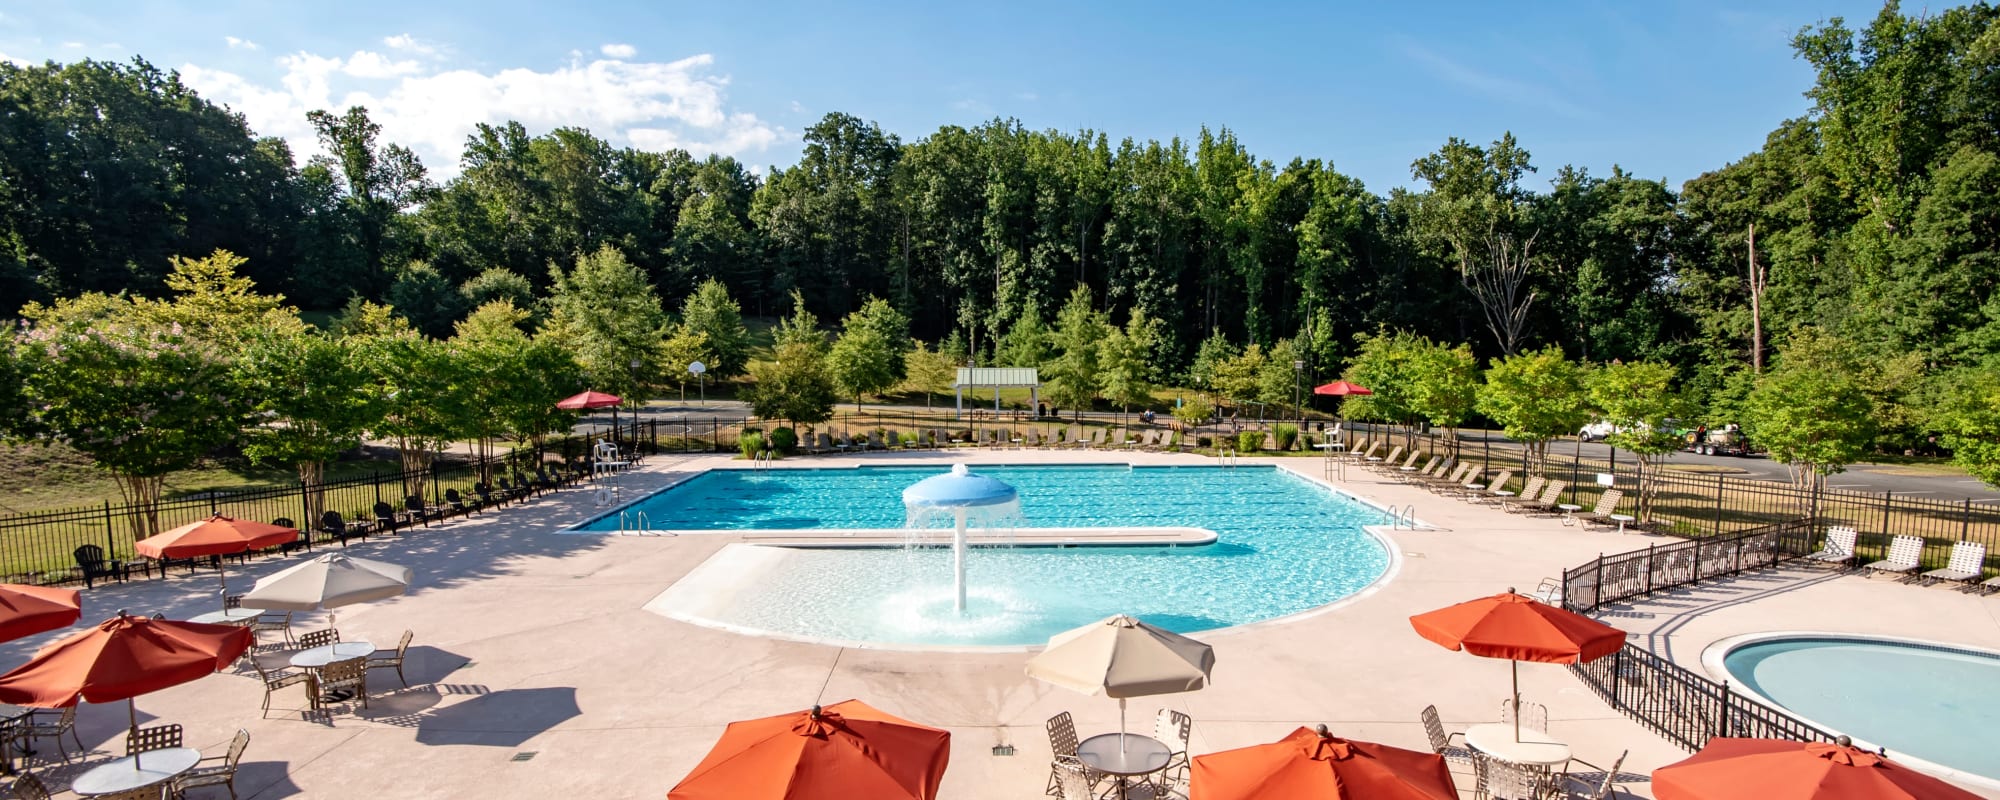 A swimming pool at Geiger Ridge in Quantico, Virginia